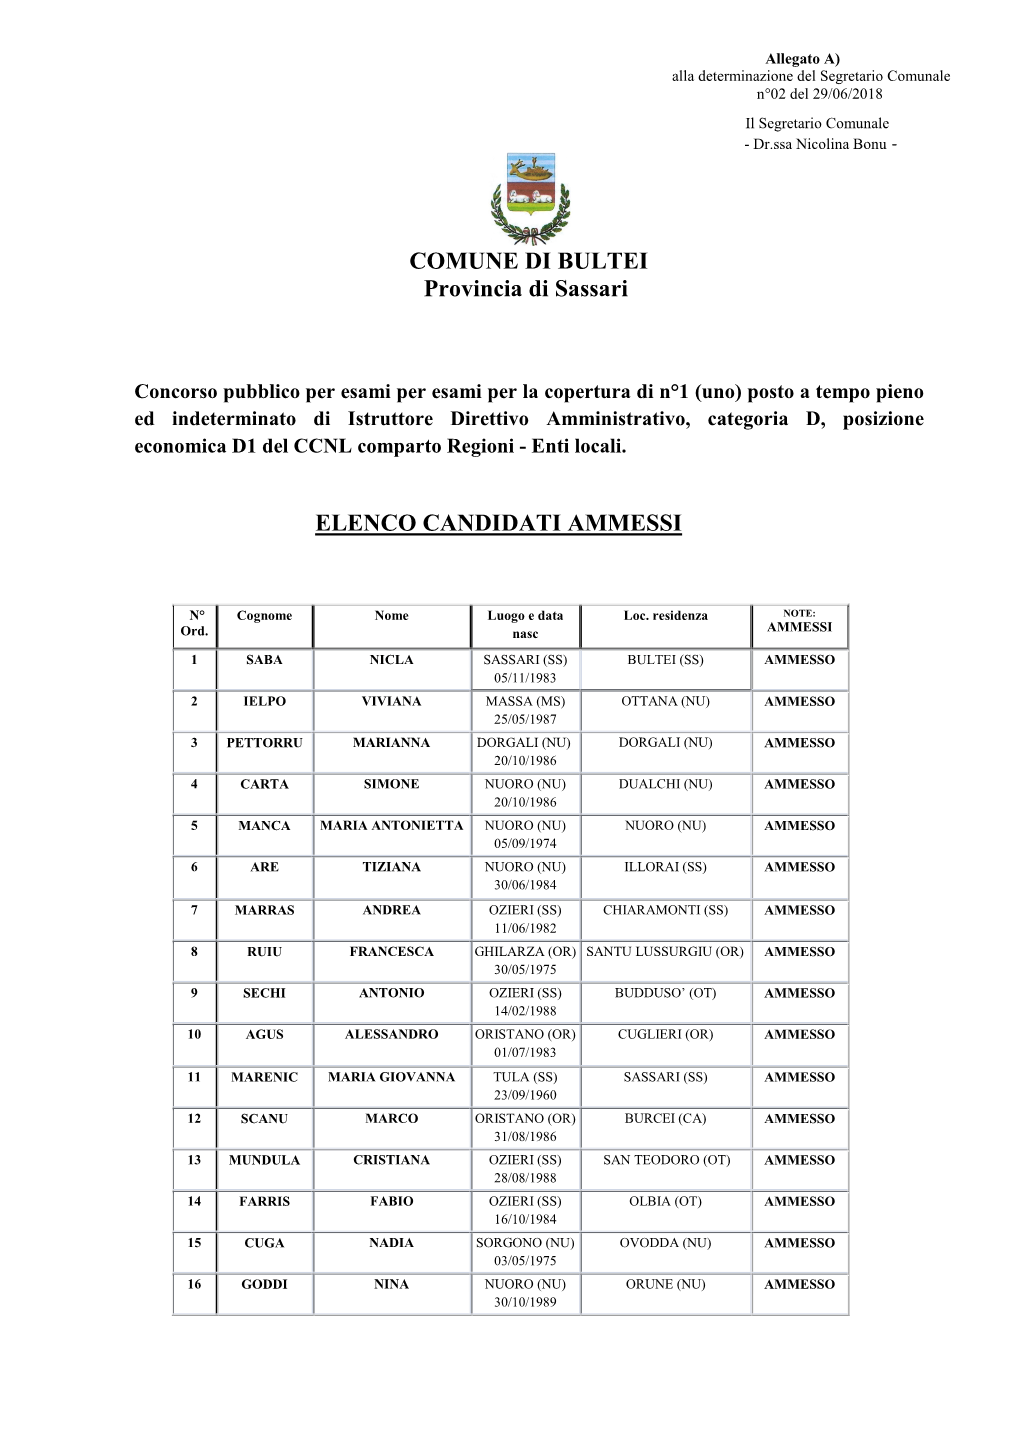 COMUNE DI BULTEI Provincia Di Sassari ELENCO CANDIDATI